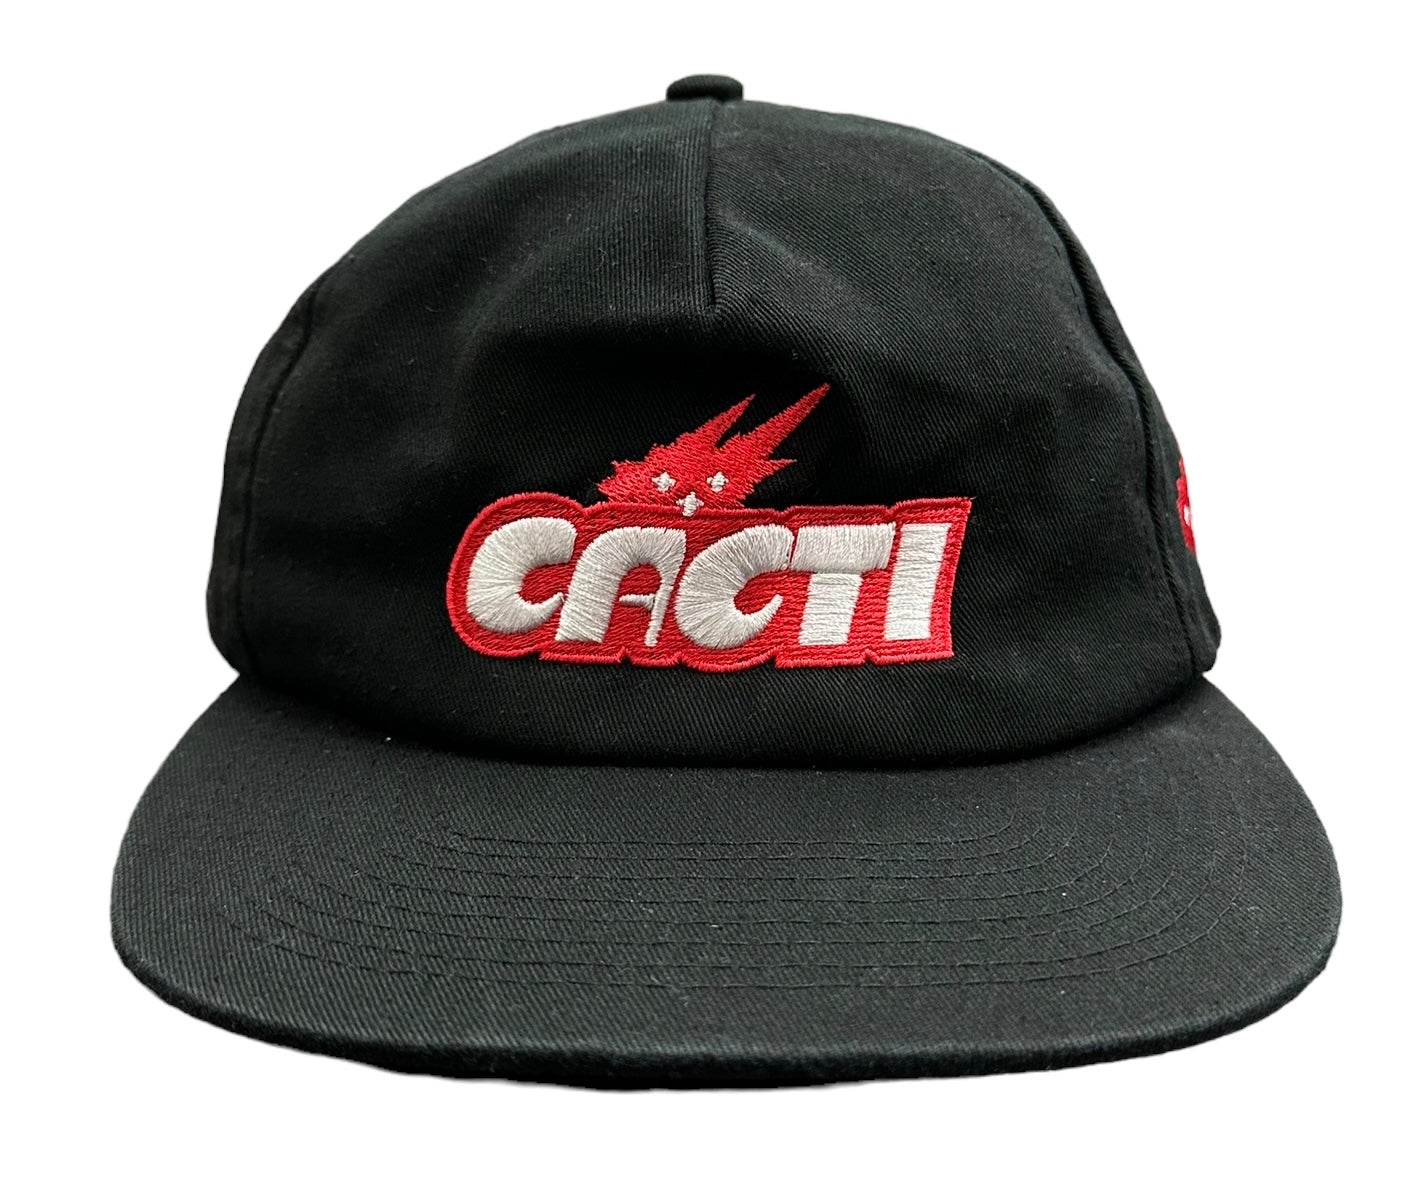 Cacti Black Hat